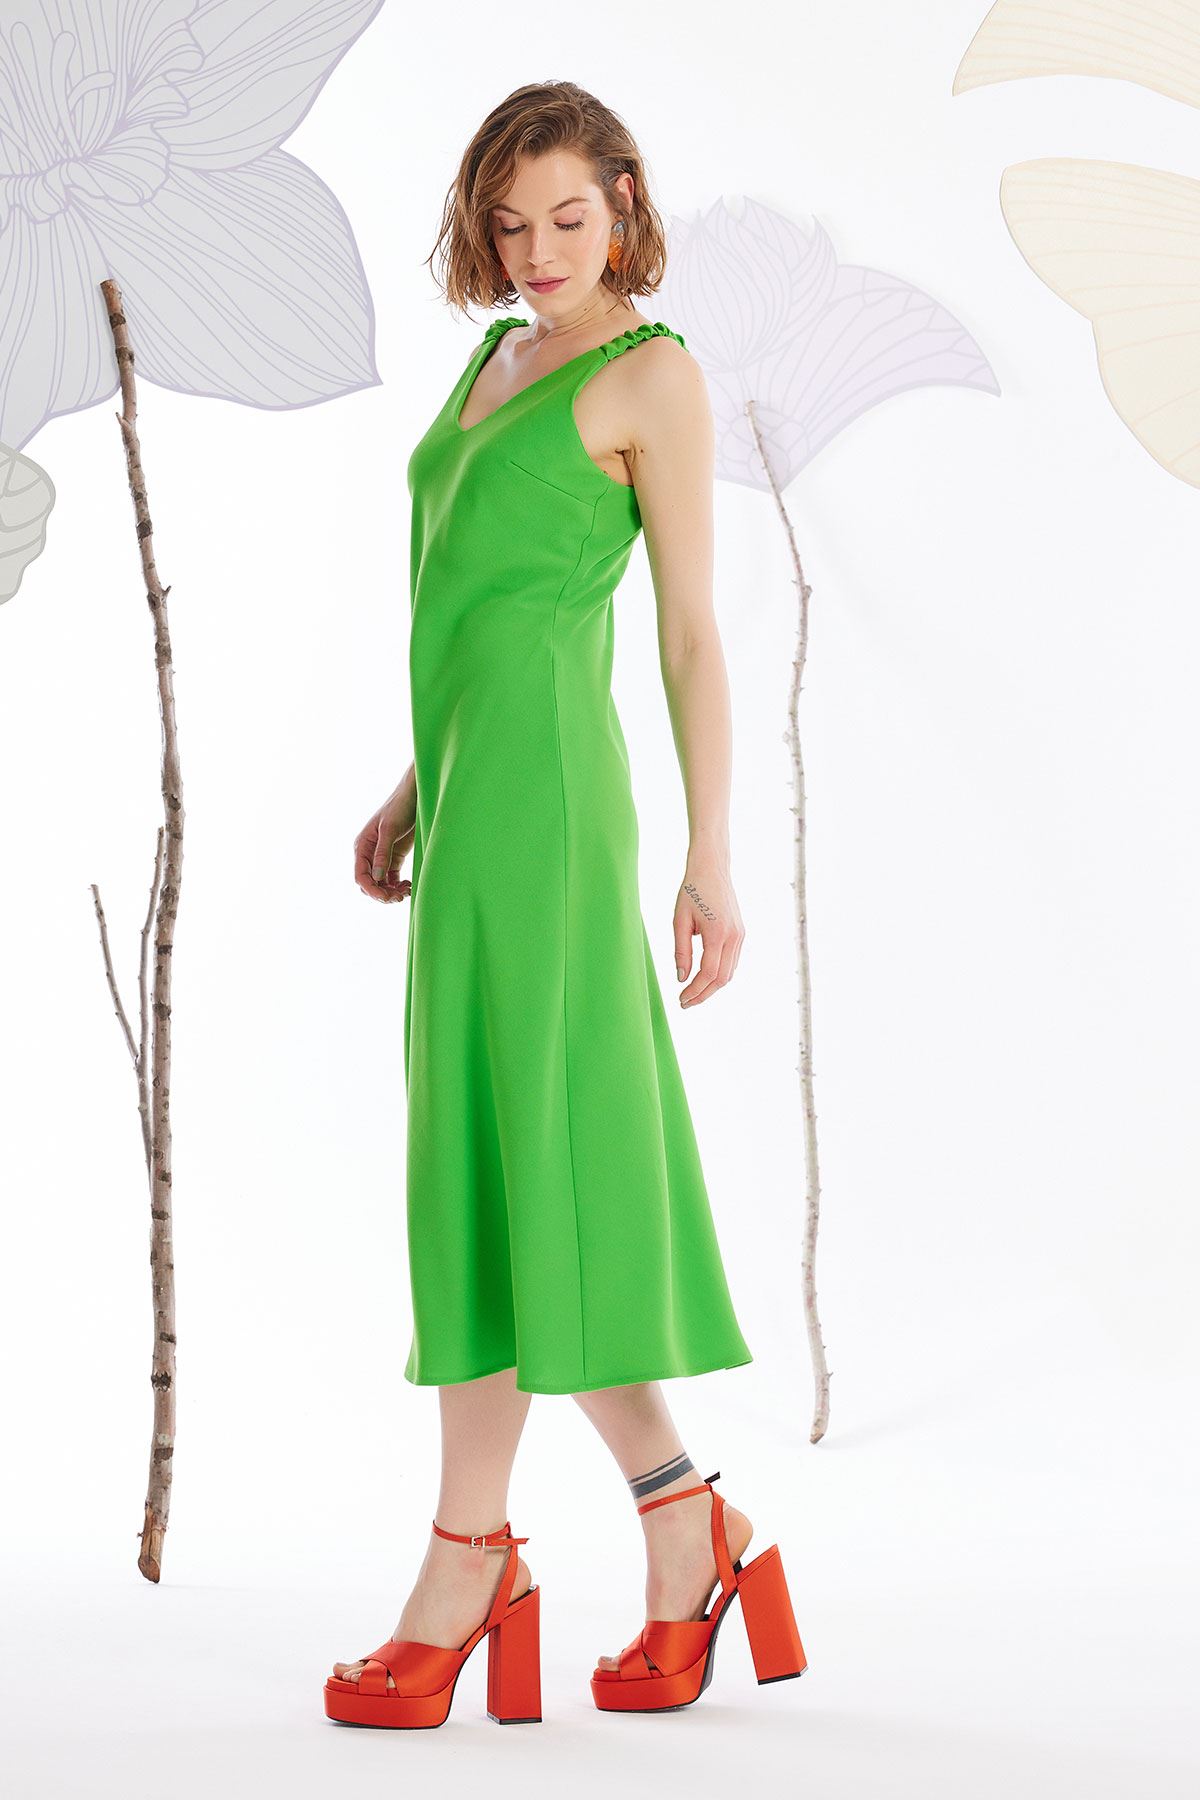 Elastik Askılı Krep Elbise Fıstık Yeşili